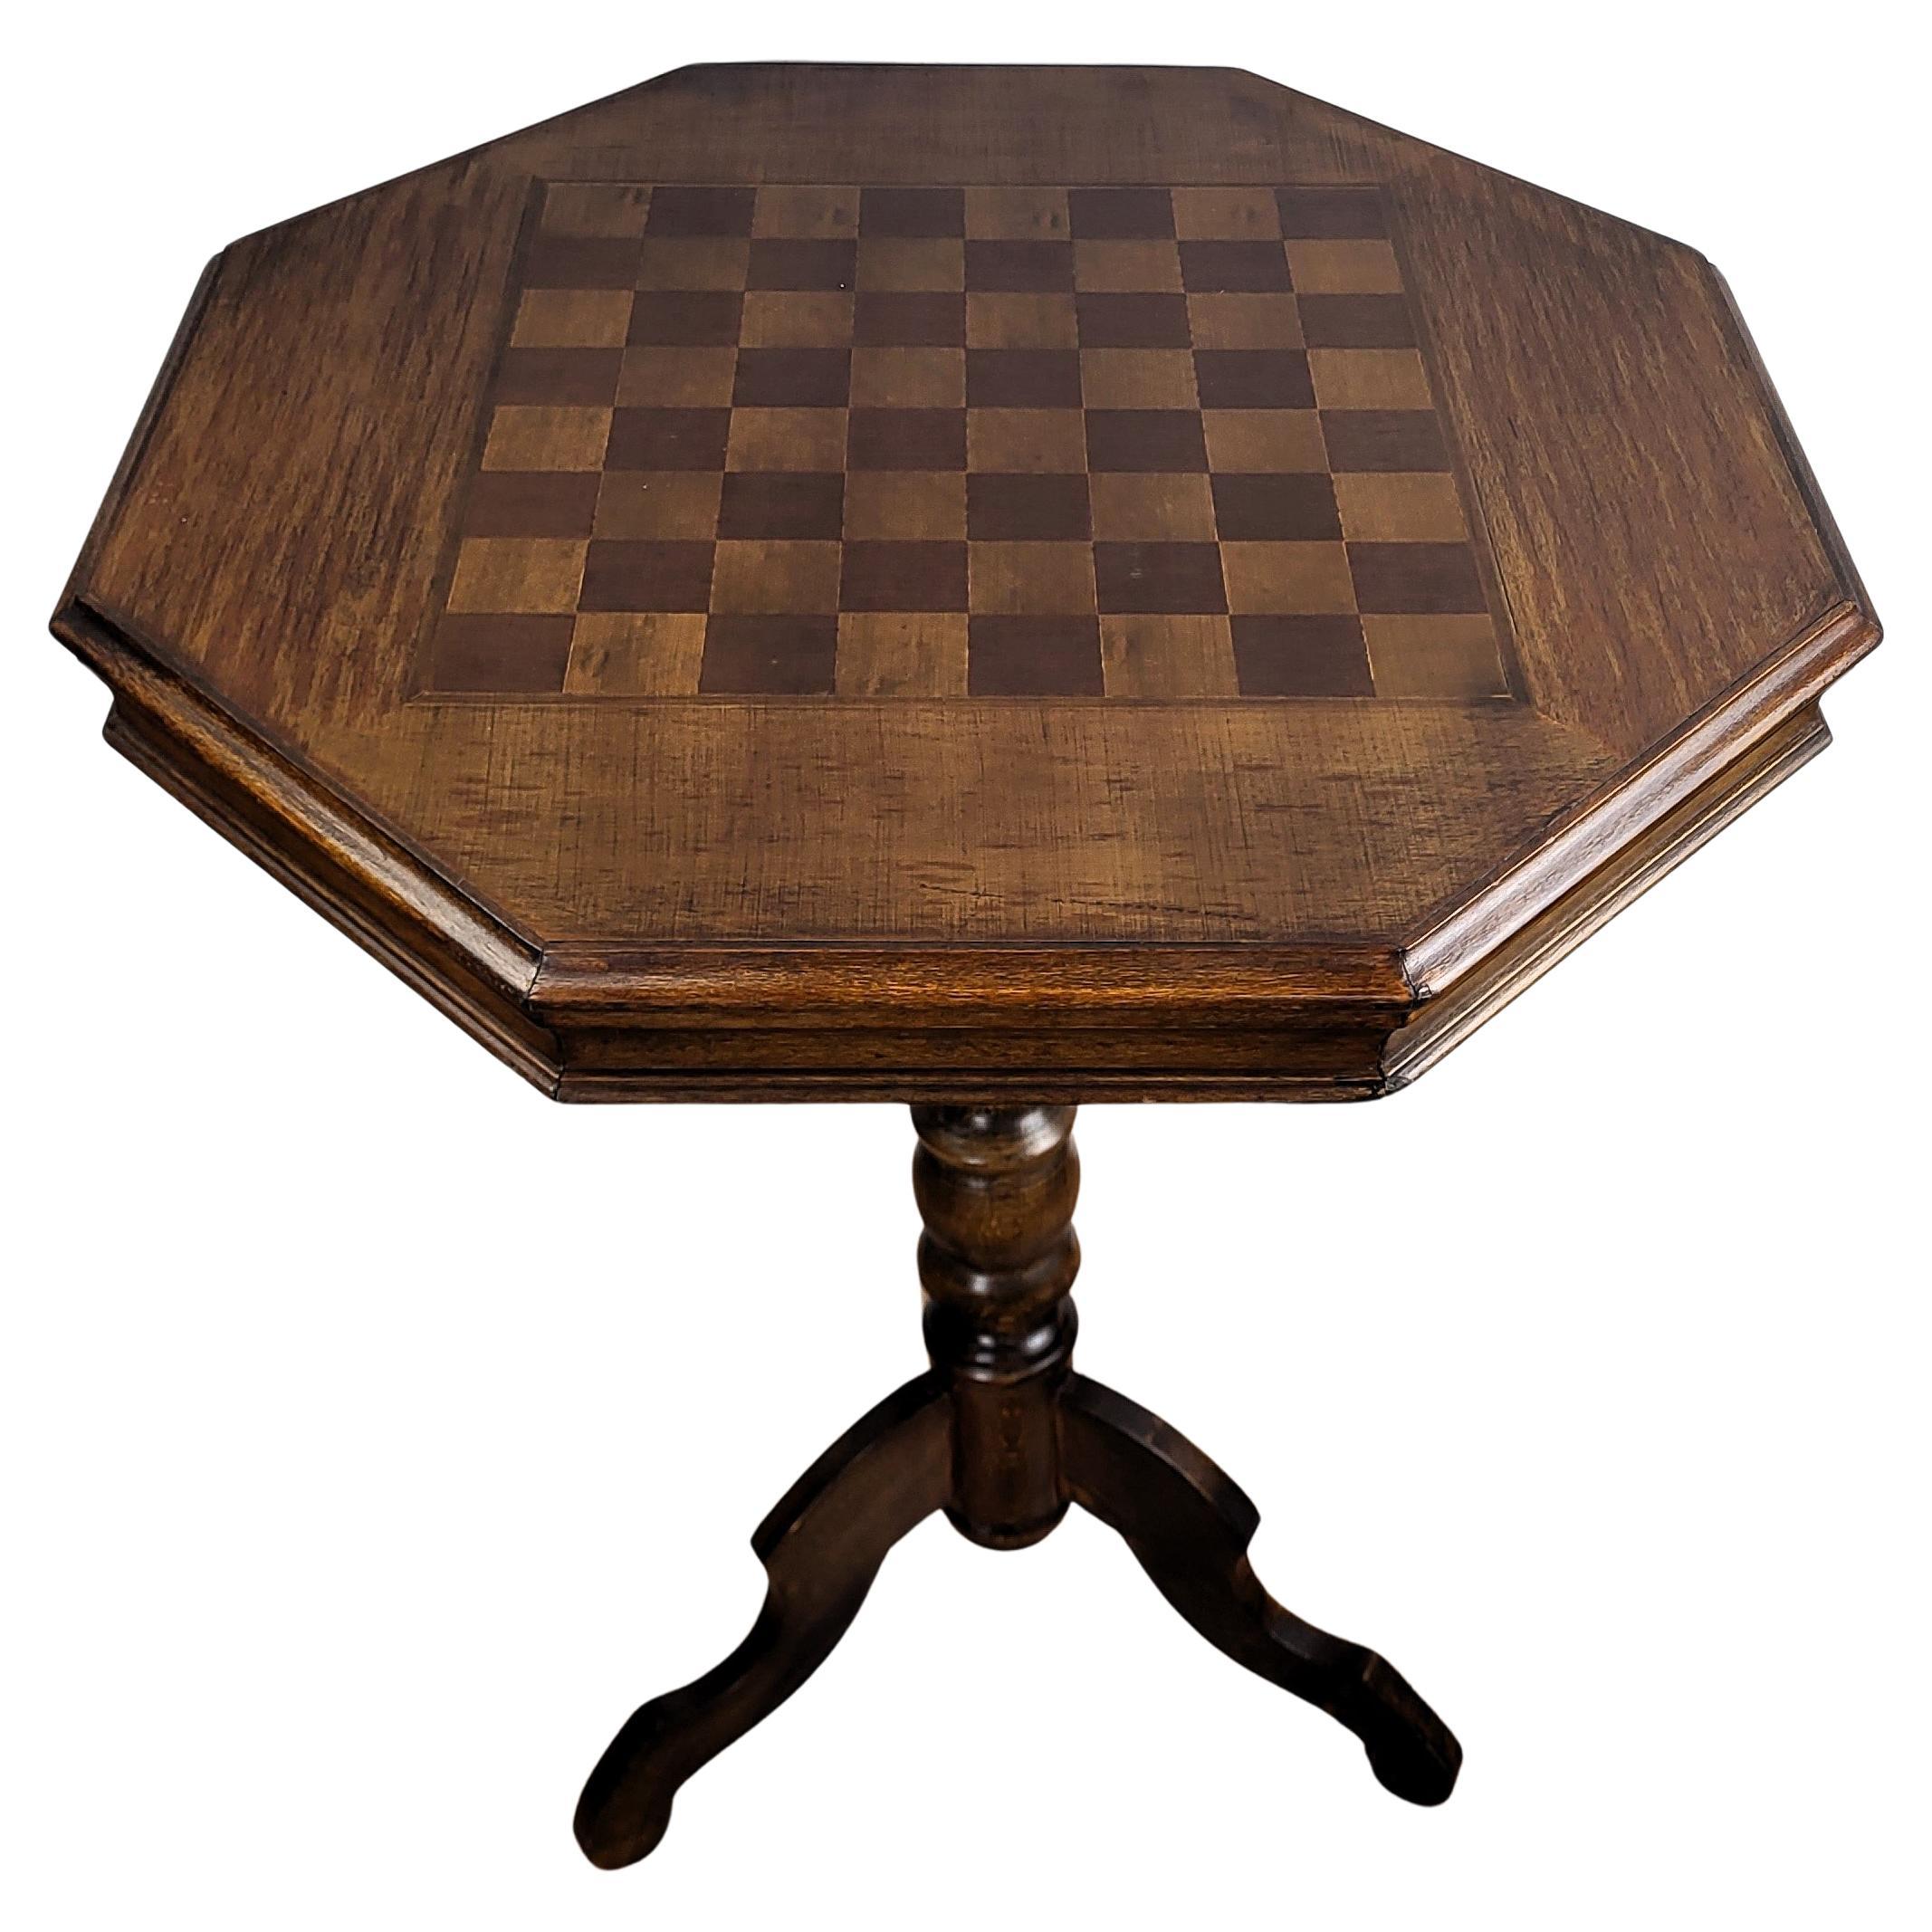 Table d'appoint ou de jeu d'échecs octogonale tripode néoclassique italienne en marqueterie de noyer